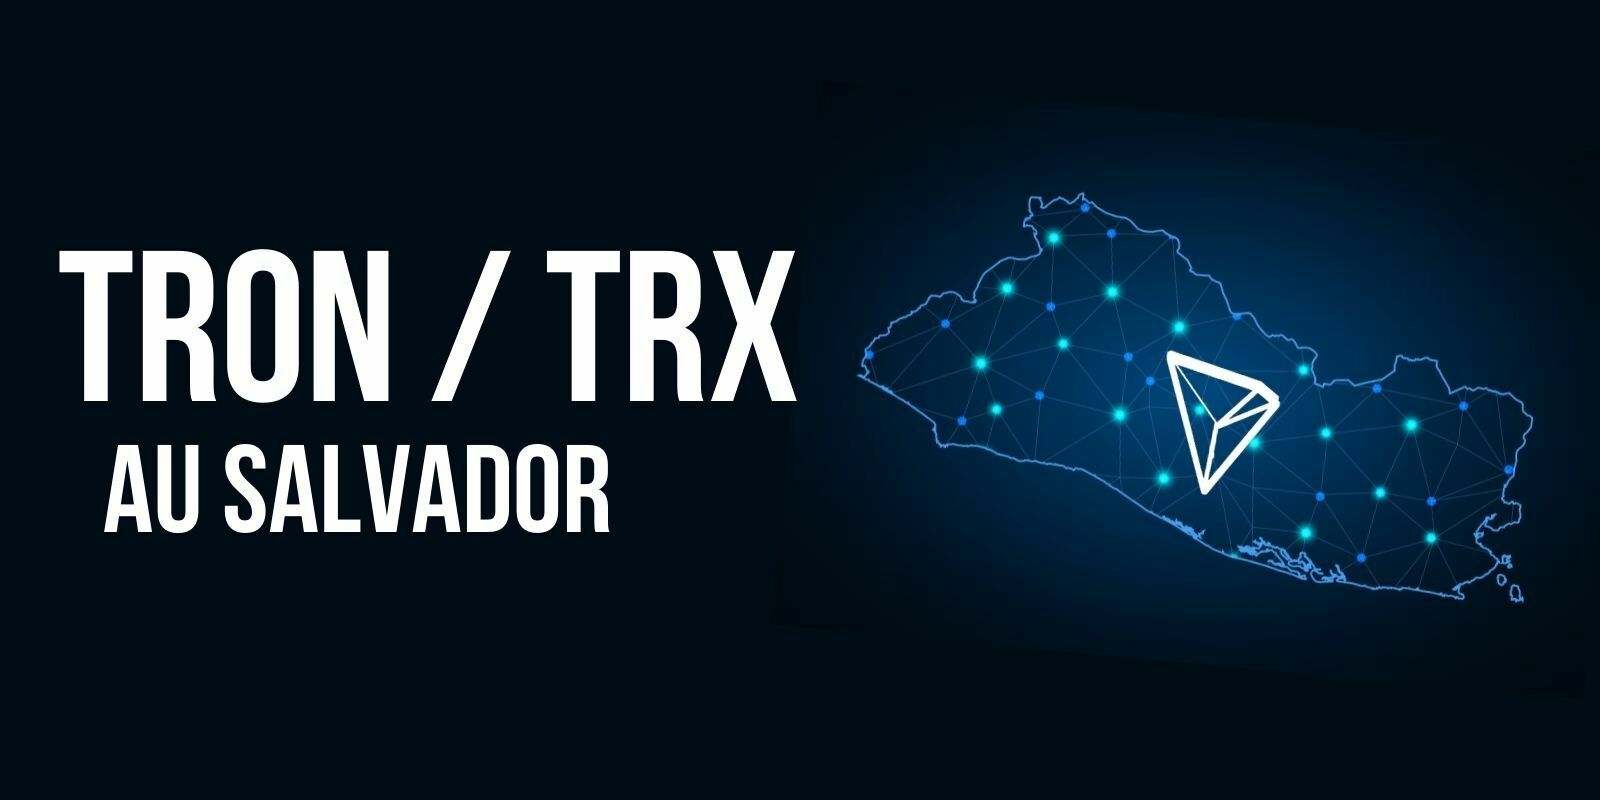 Tron (TRX) va ouvrir des bureaux au Salvador, selon Justin Sun